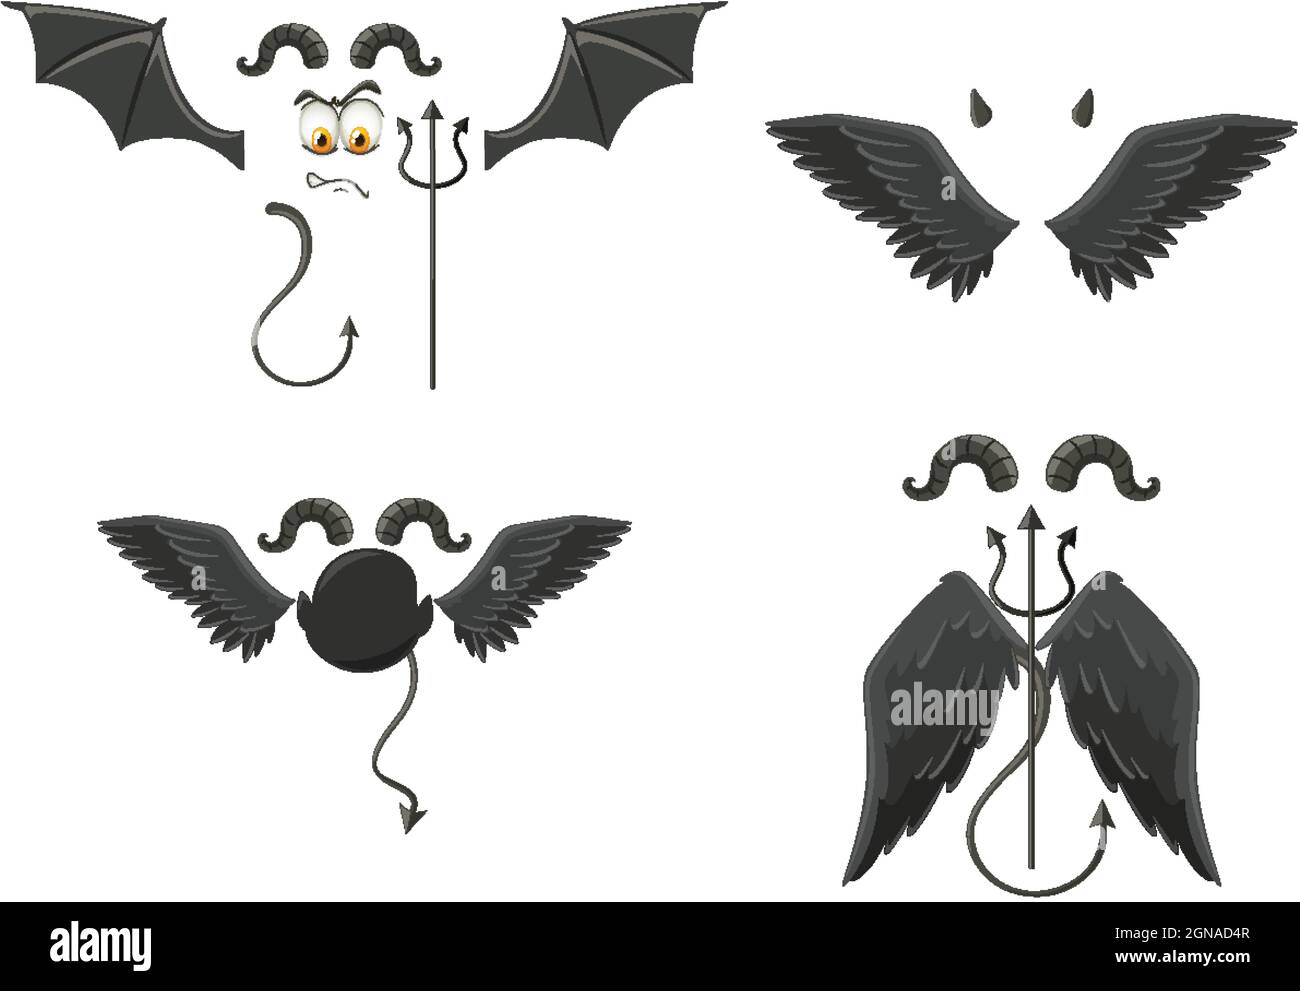 Devil and angel design elements illustration Stock Vector Image & Art ...